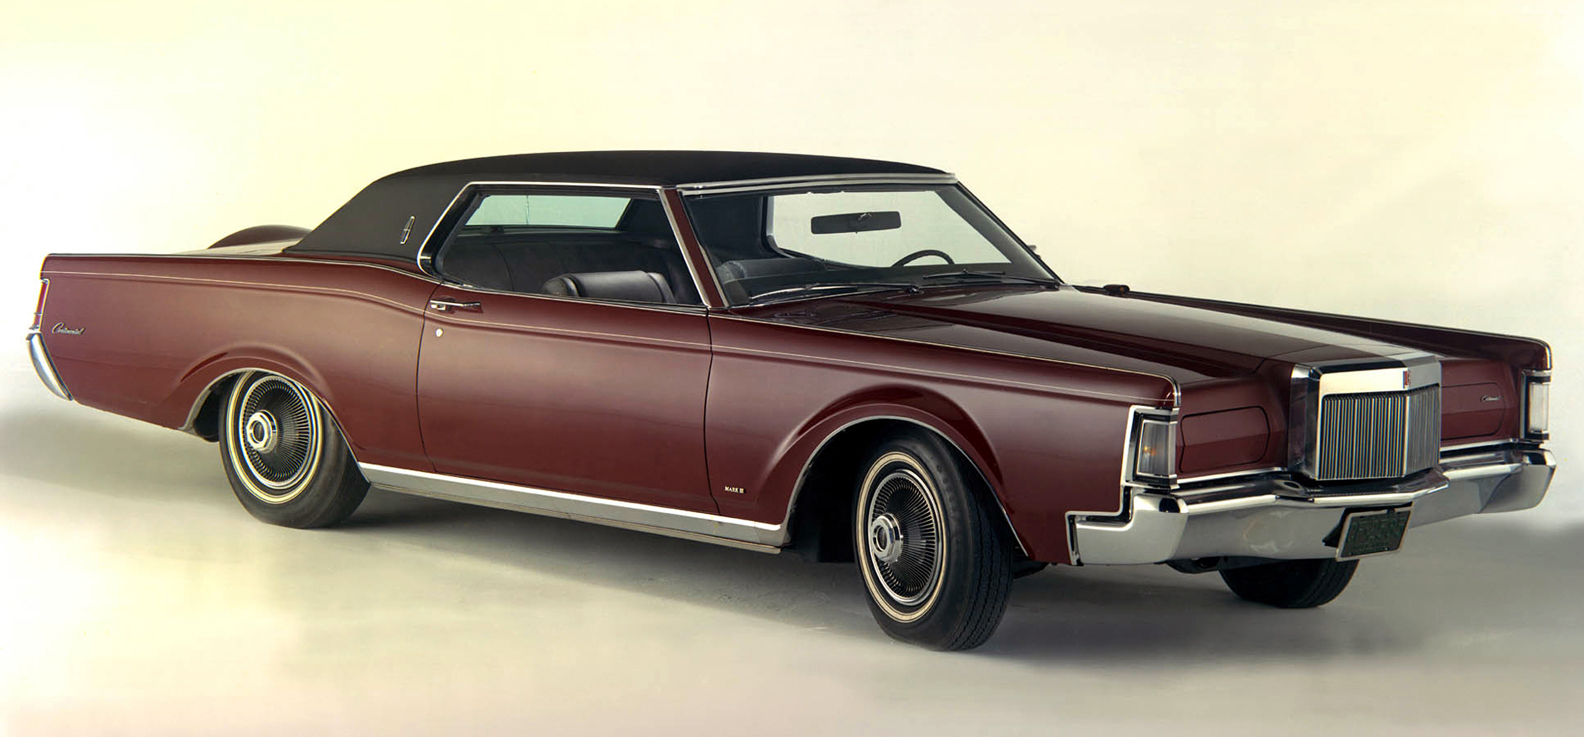 1973 Lincoln Continental Mark III